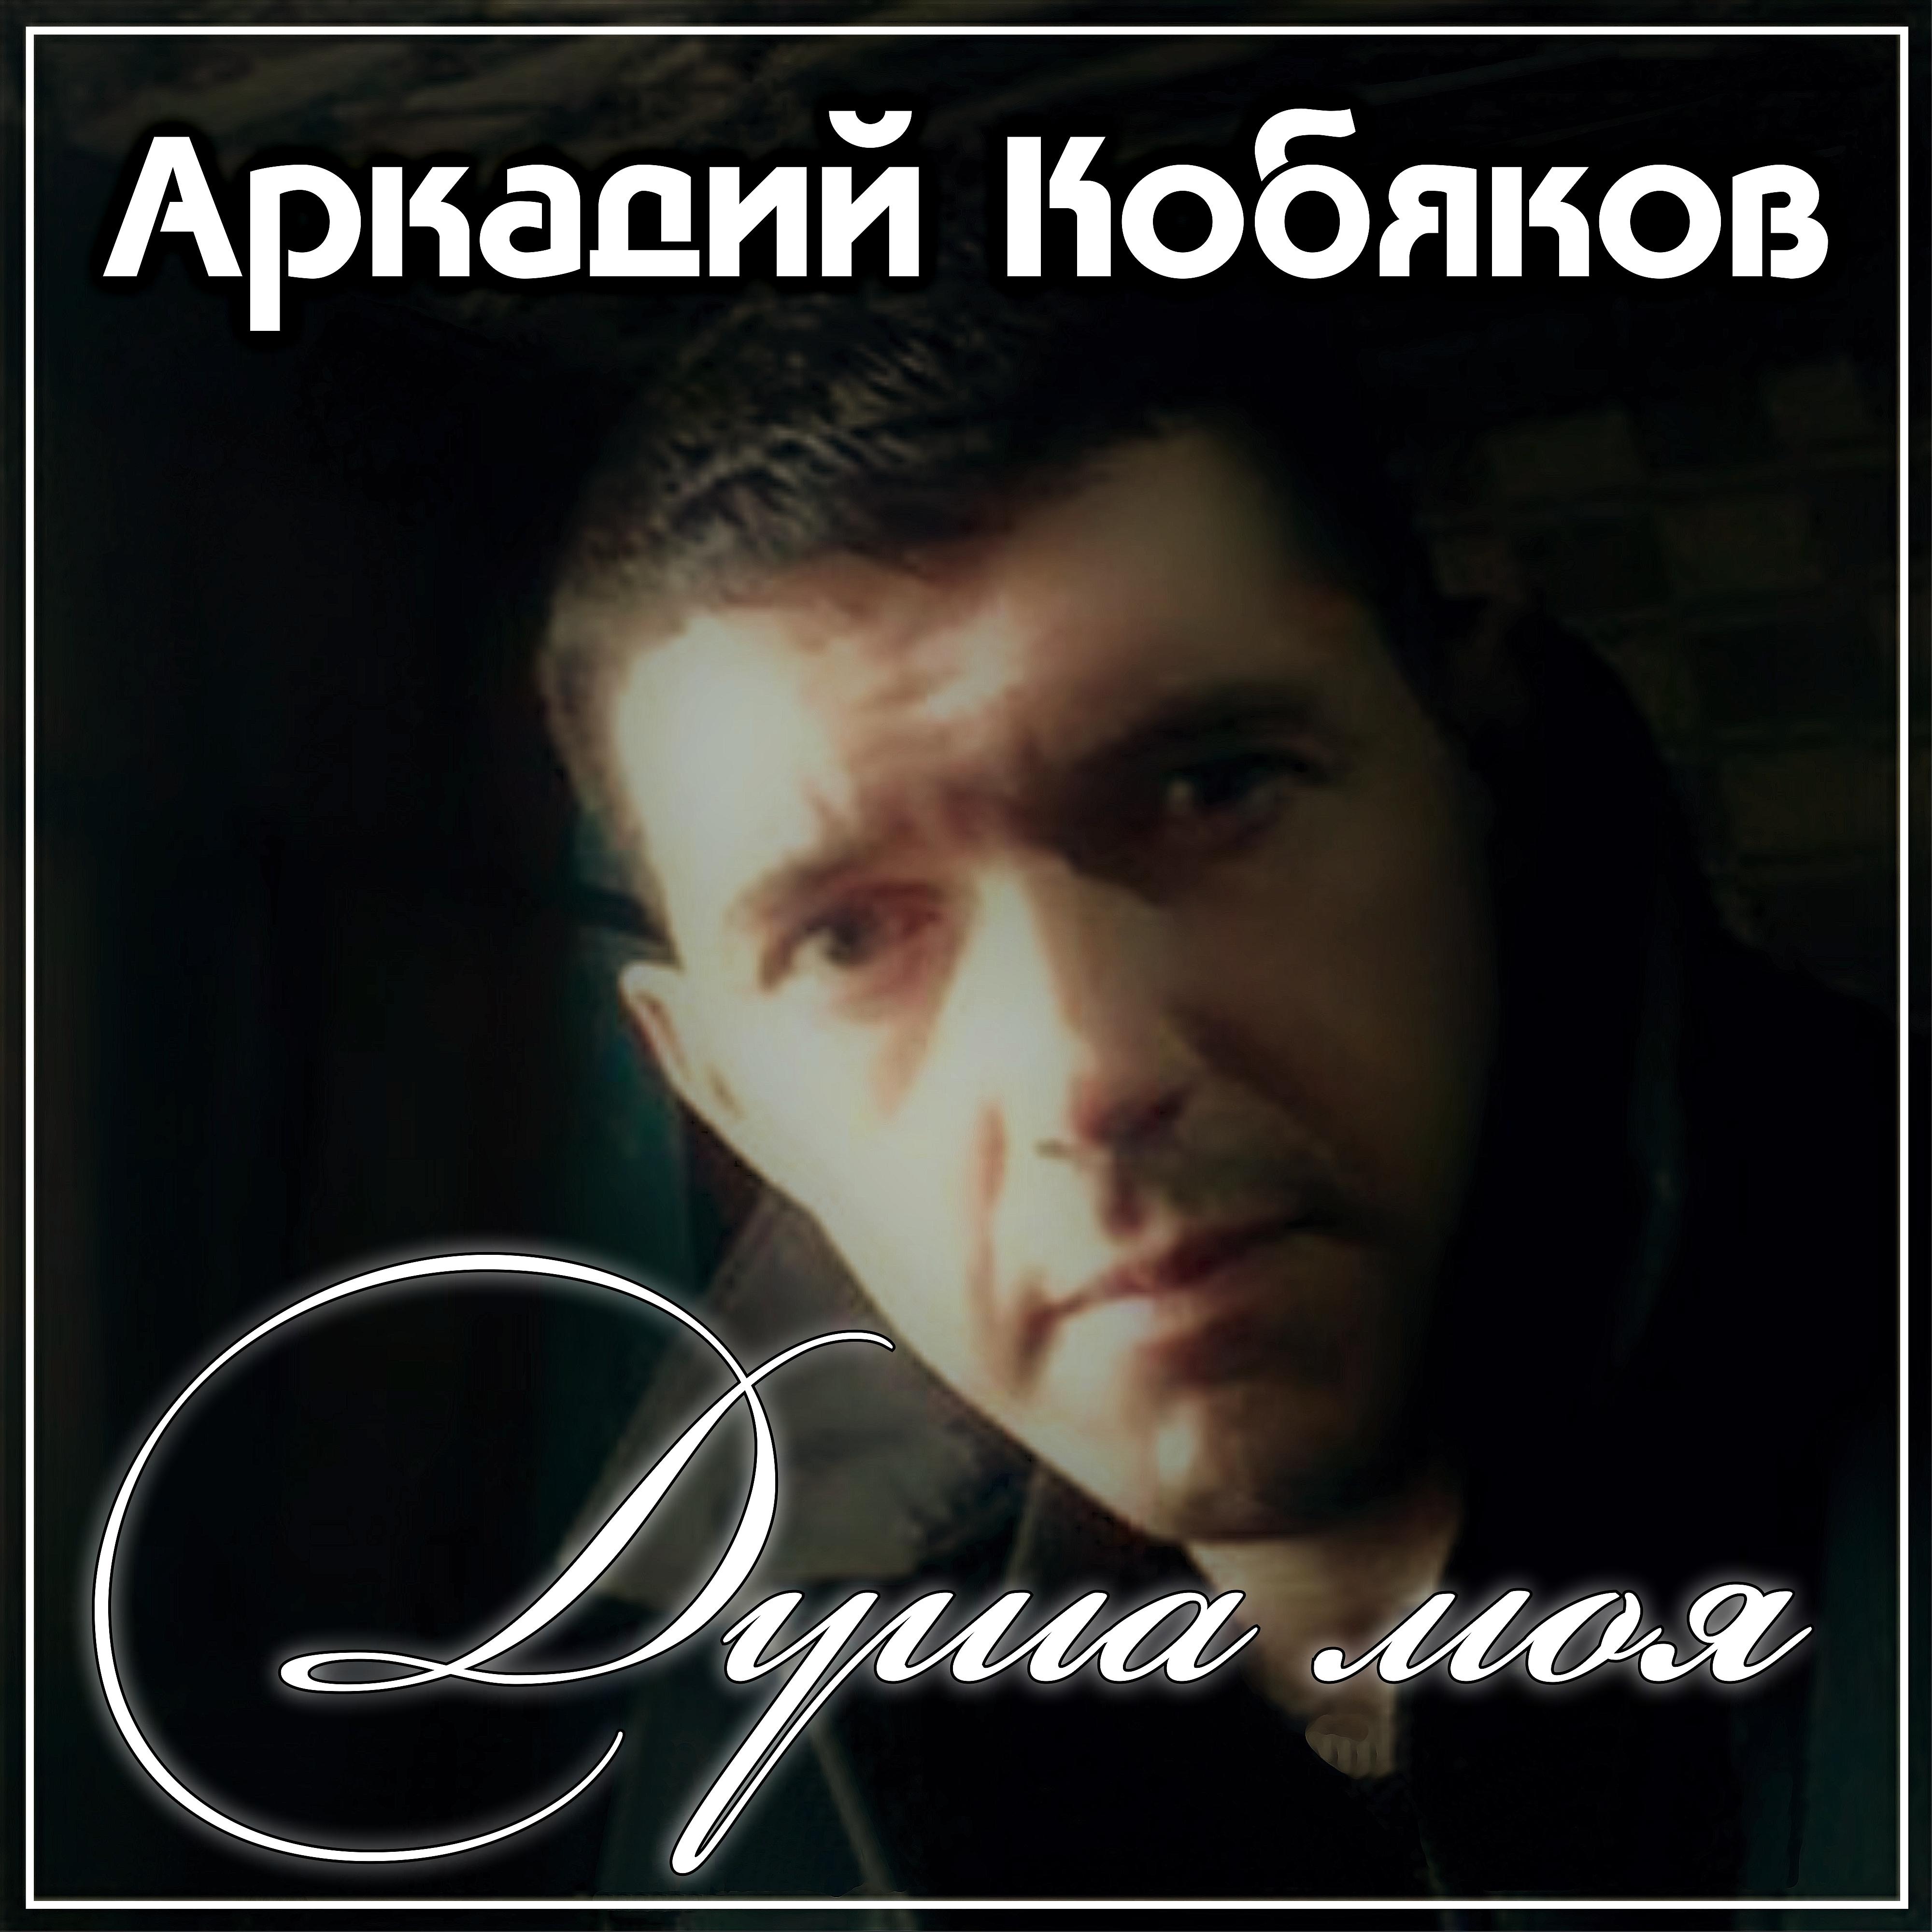 4 песни кобякова. Кобяков в 2012.